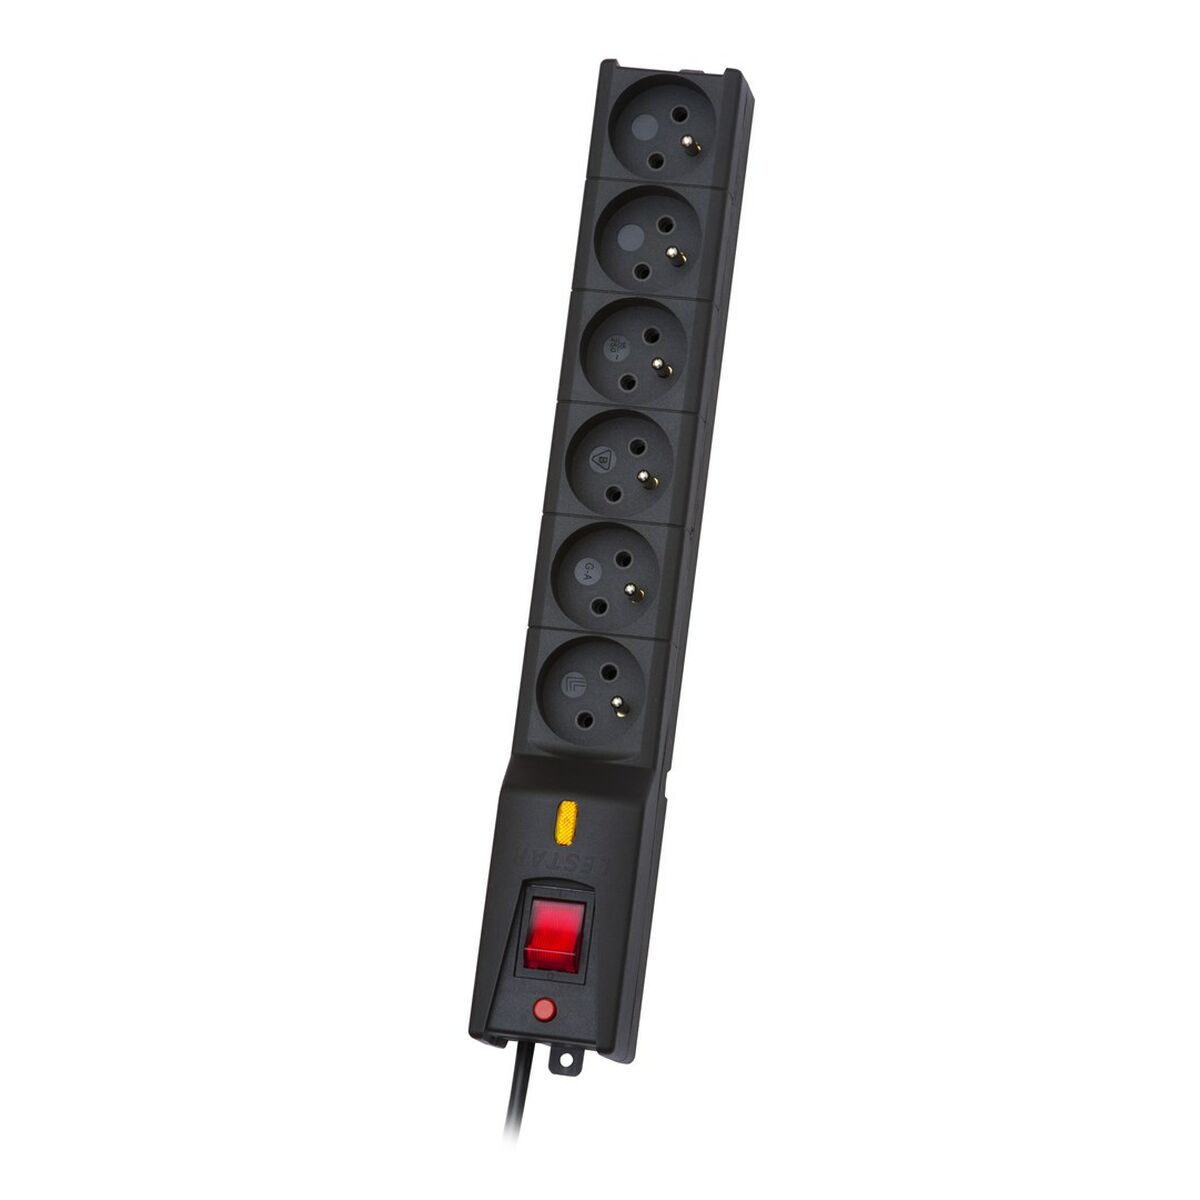 Multiprise 6 Prises avec Interrupteur Lestar LX 610 G-A K.:CZ 1,5M 1,5 m 5,2 x 3,8 x 35,5 cm